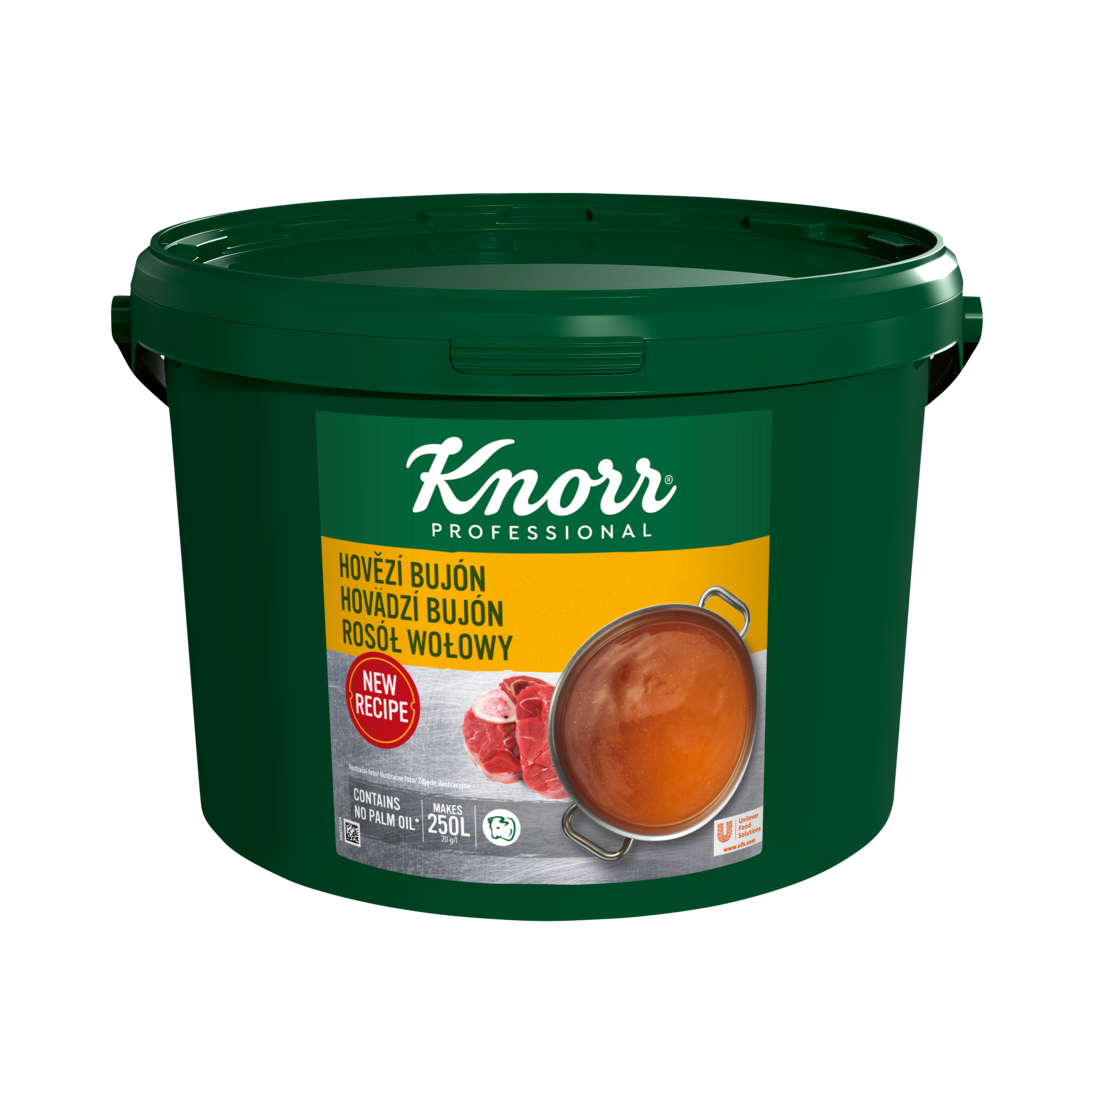 KNORR Professional Hovädzí bujón 5 kg - Knorr bujóny dodávajú chuť, farbu a správnu konzistenciu polievkam a jedlám.